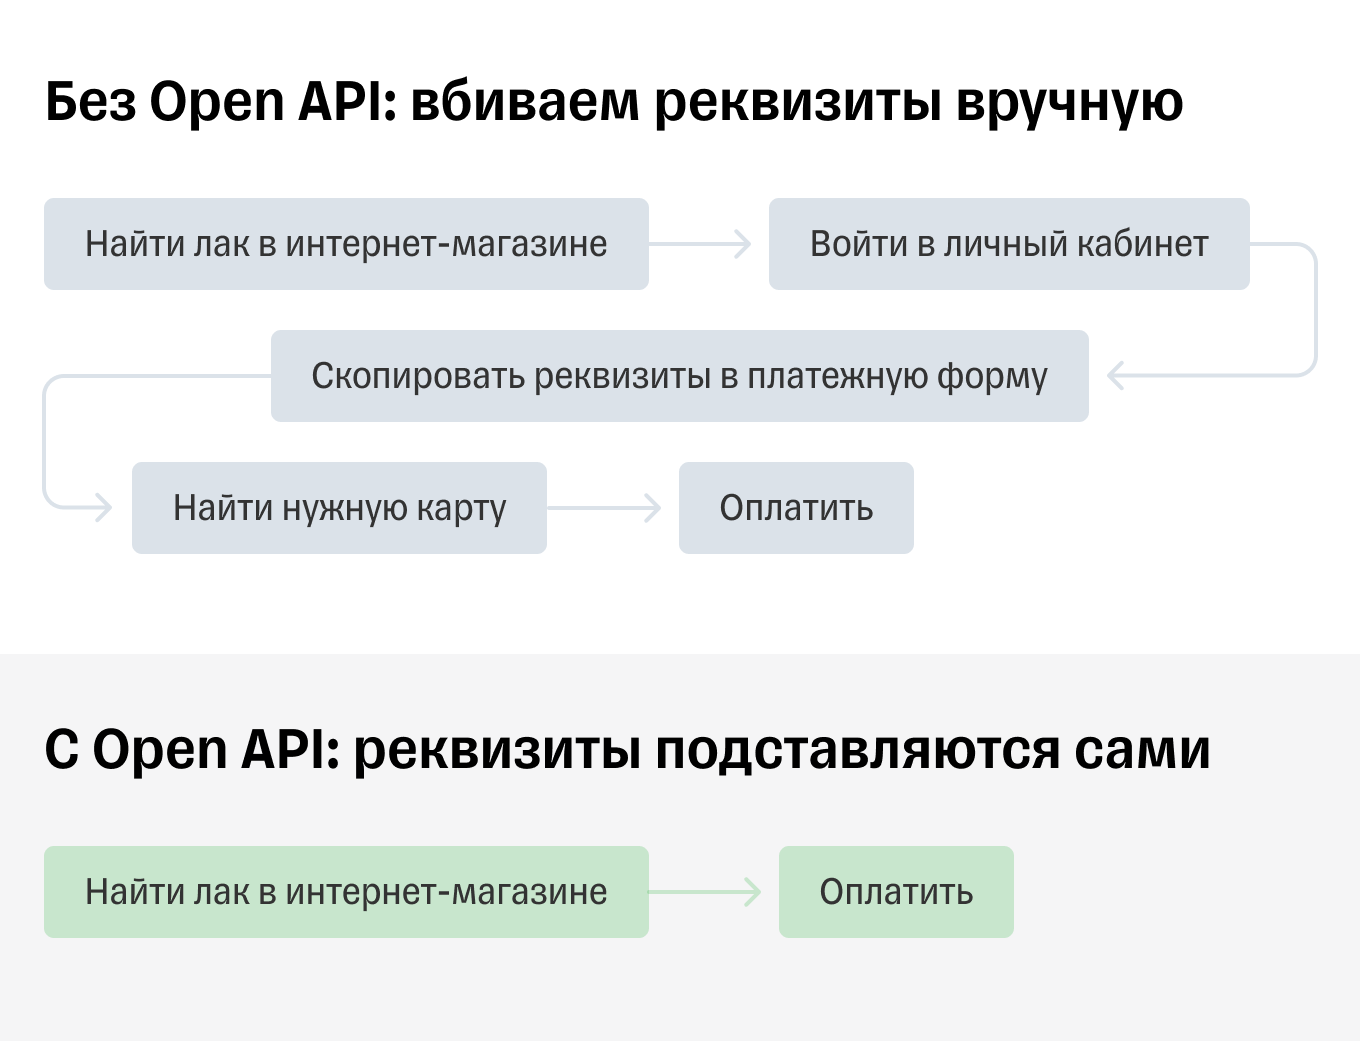 Онлайн-покупки с Open API и без него